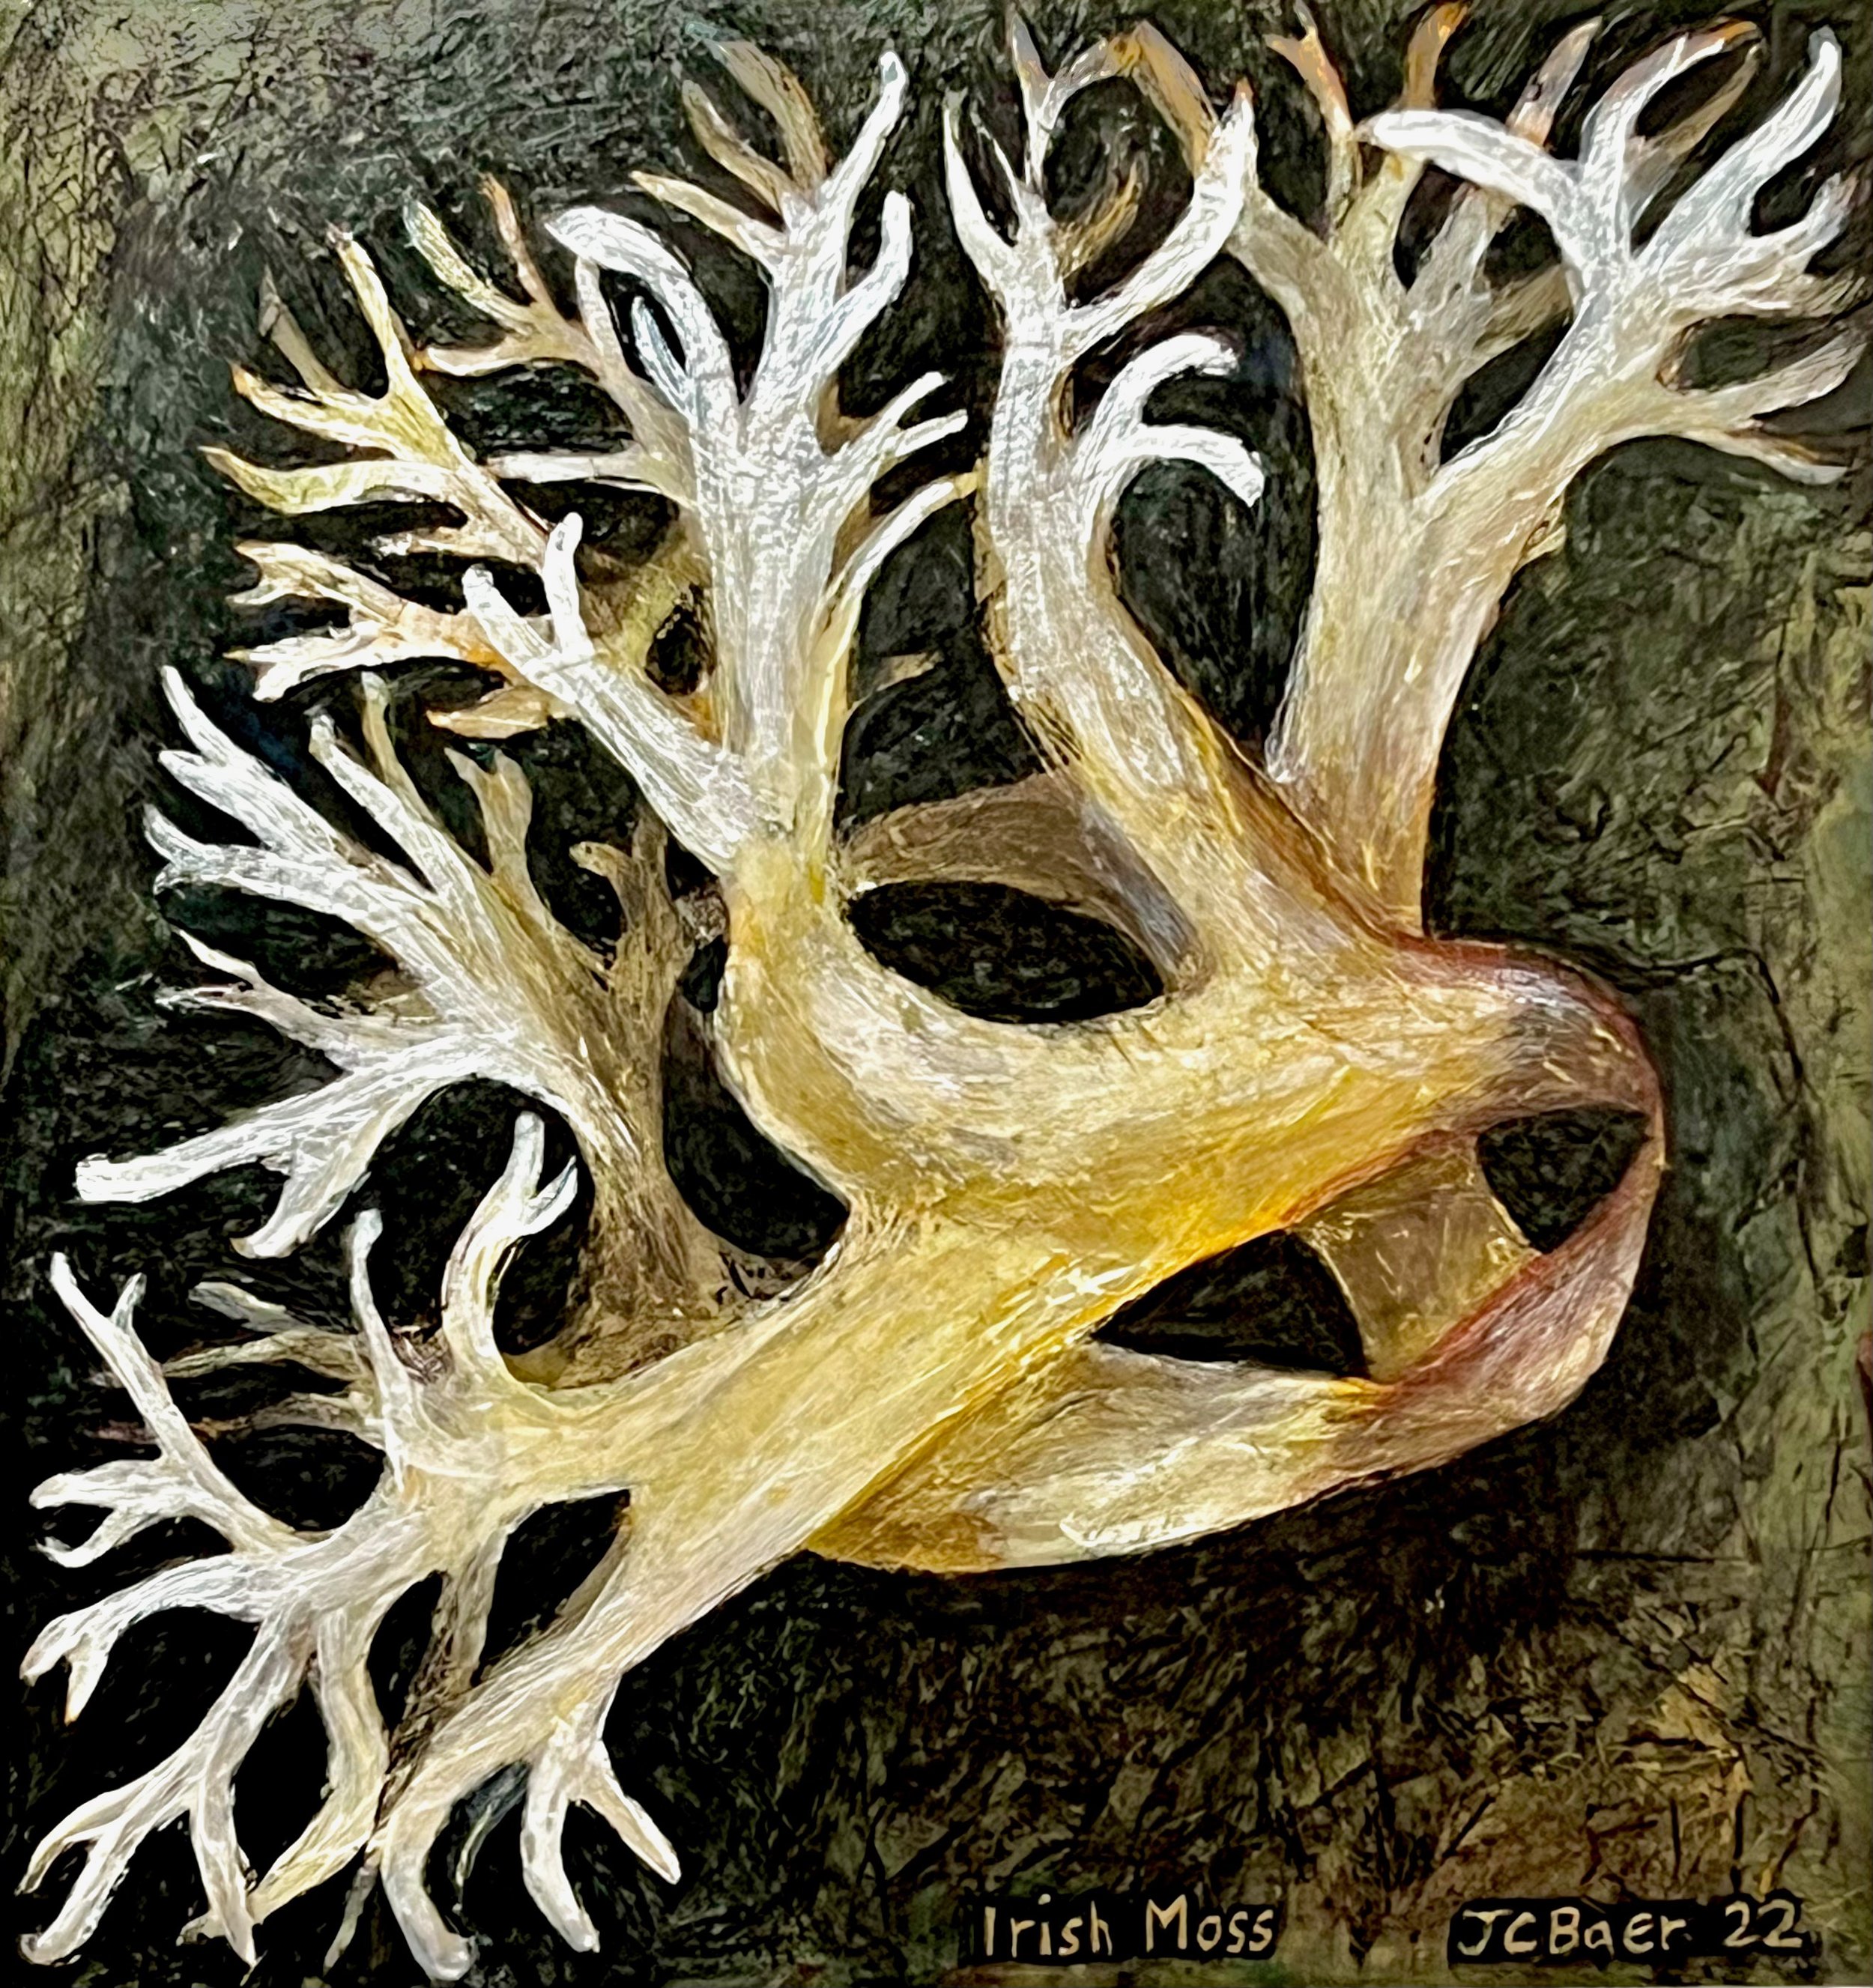 Irish Moss (Chondrus crispus,) 2022, acrylic on arches paper, 12x12”, $500